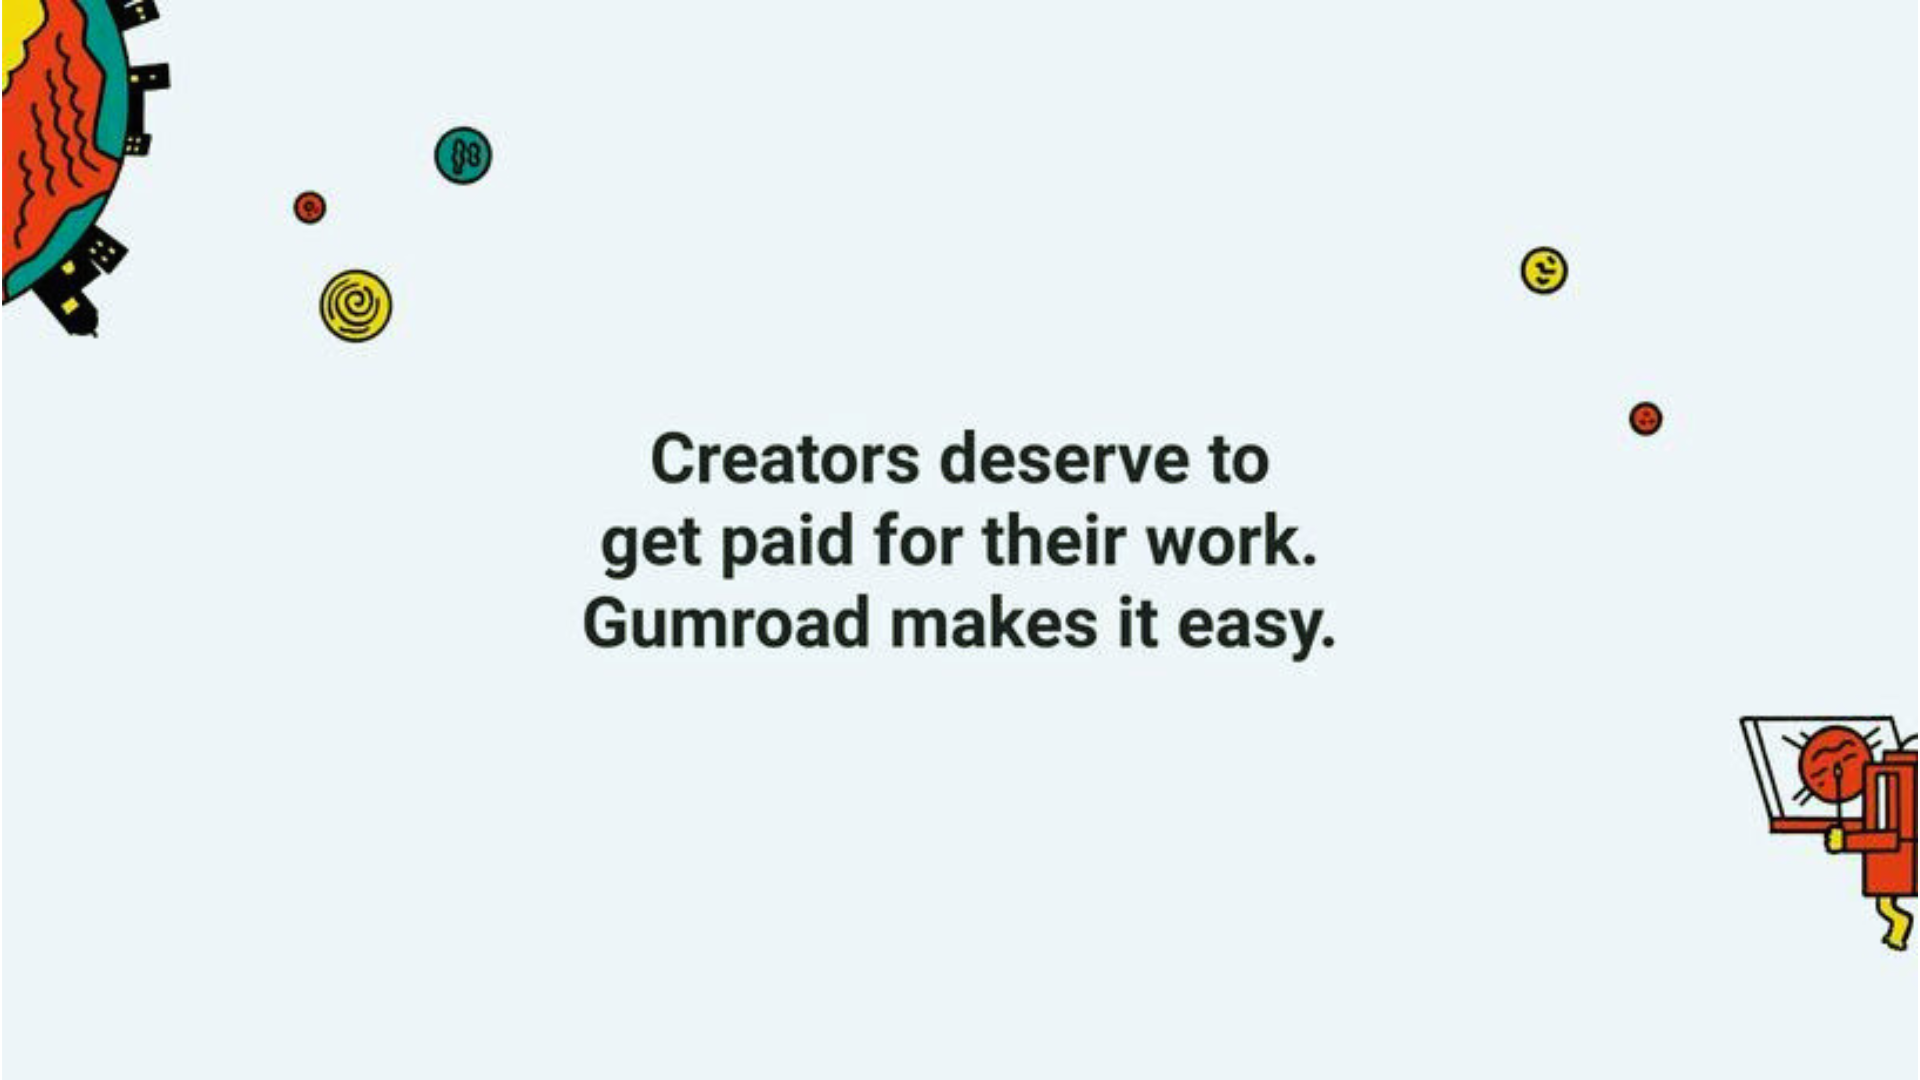 검로드의 미션 'Creators deserve to get paid for their work'